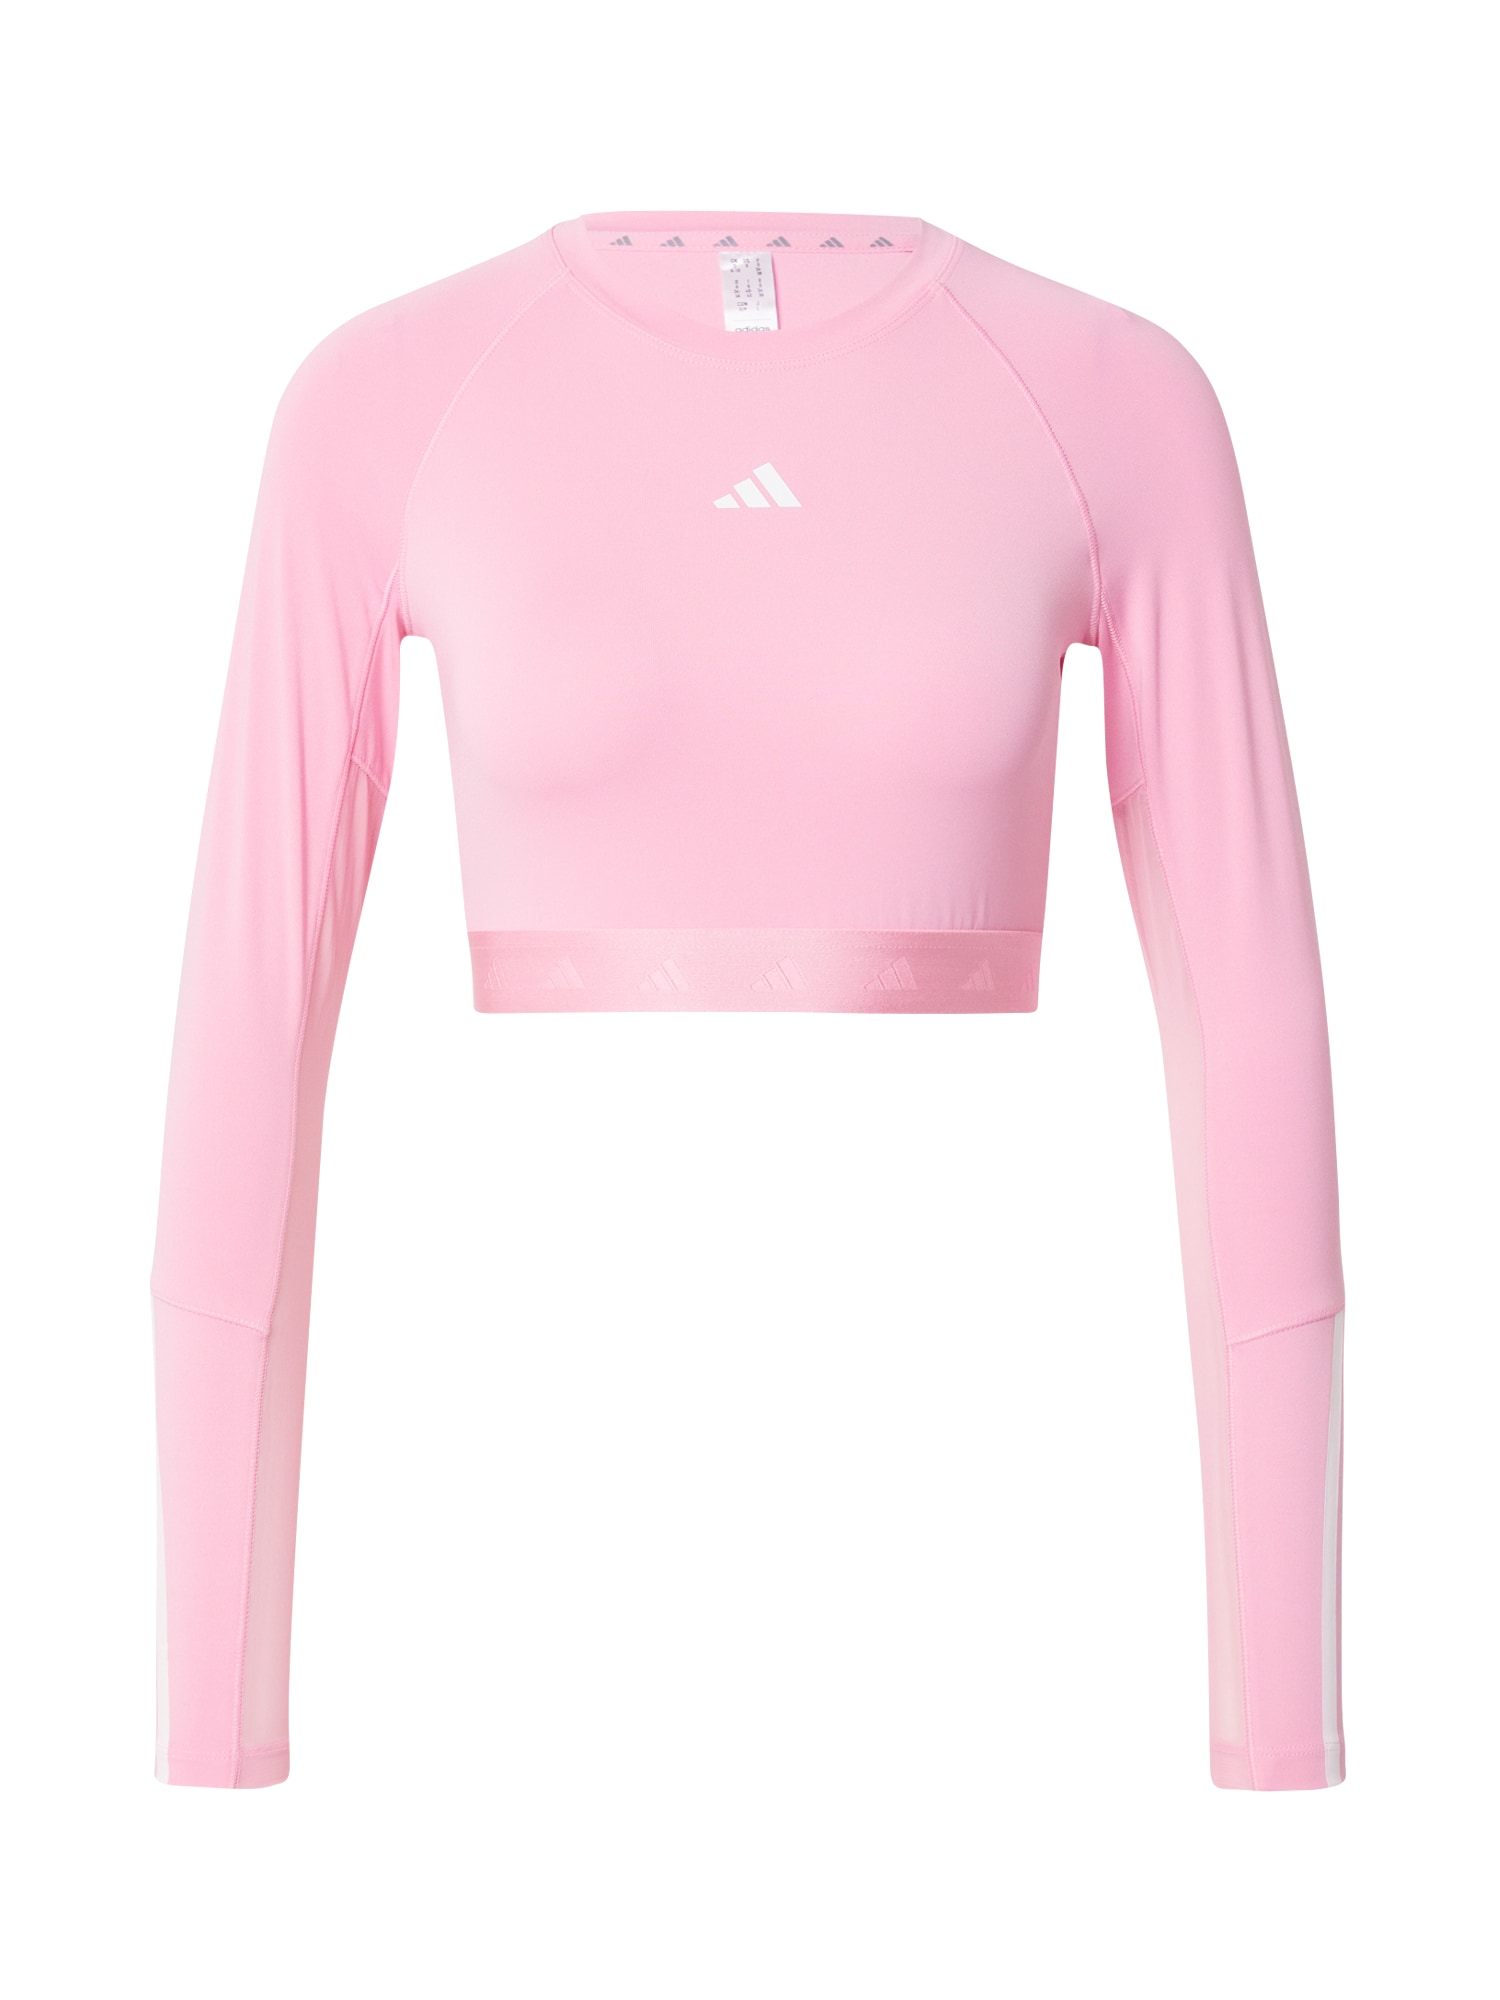 ADIDAS PERFORMANCE Sportiniai marškinėliai 'HYGLM' rožių spalva / balta